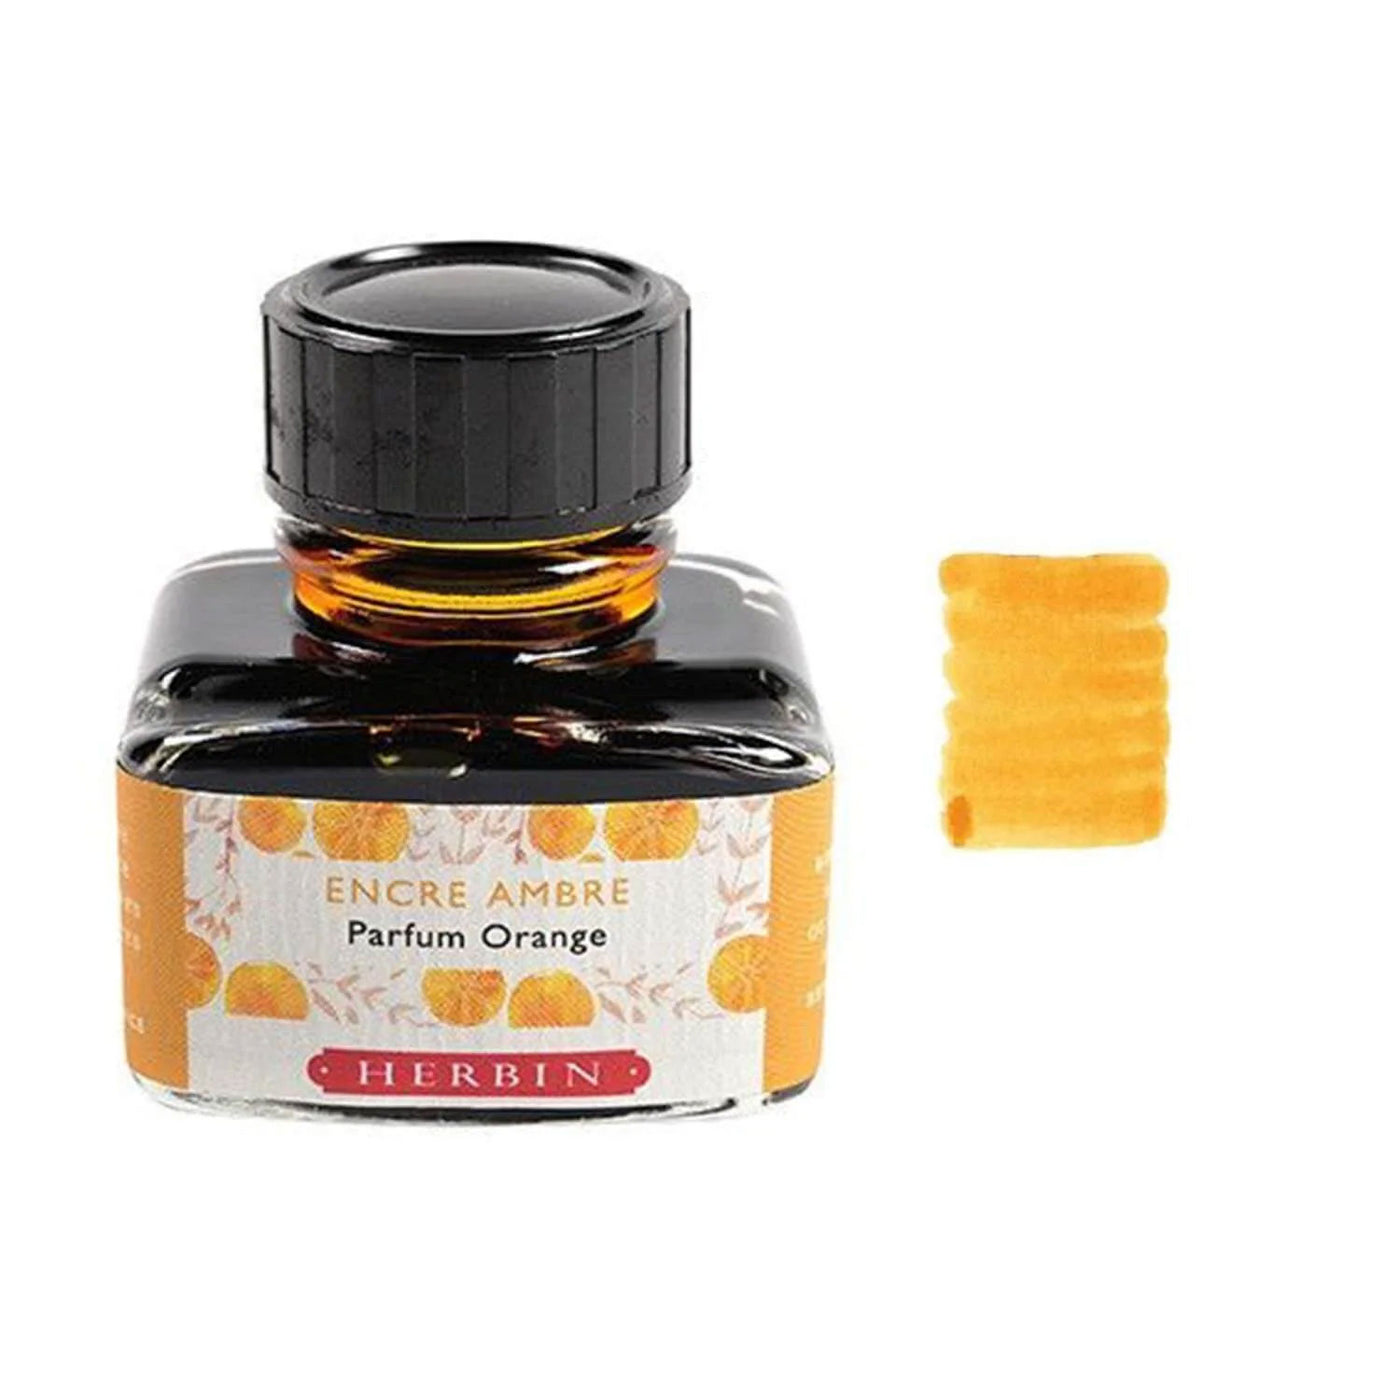 J Herbin Encre Scented Ink Bottle Amber (Orange) - 30ml 2